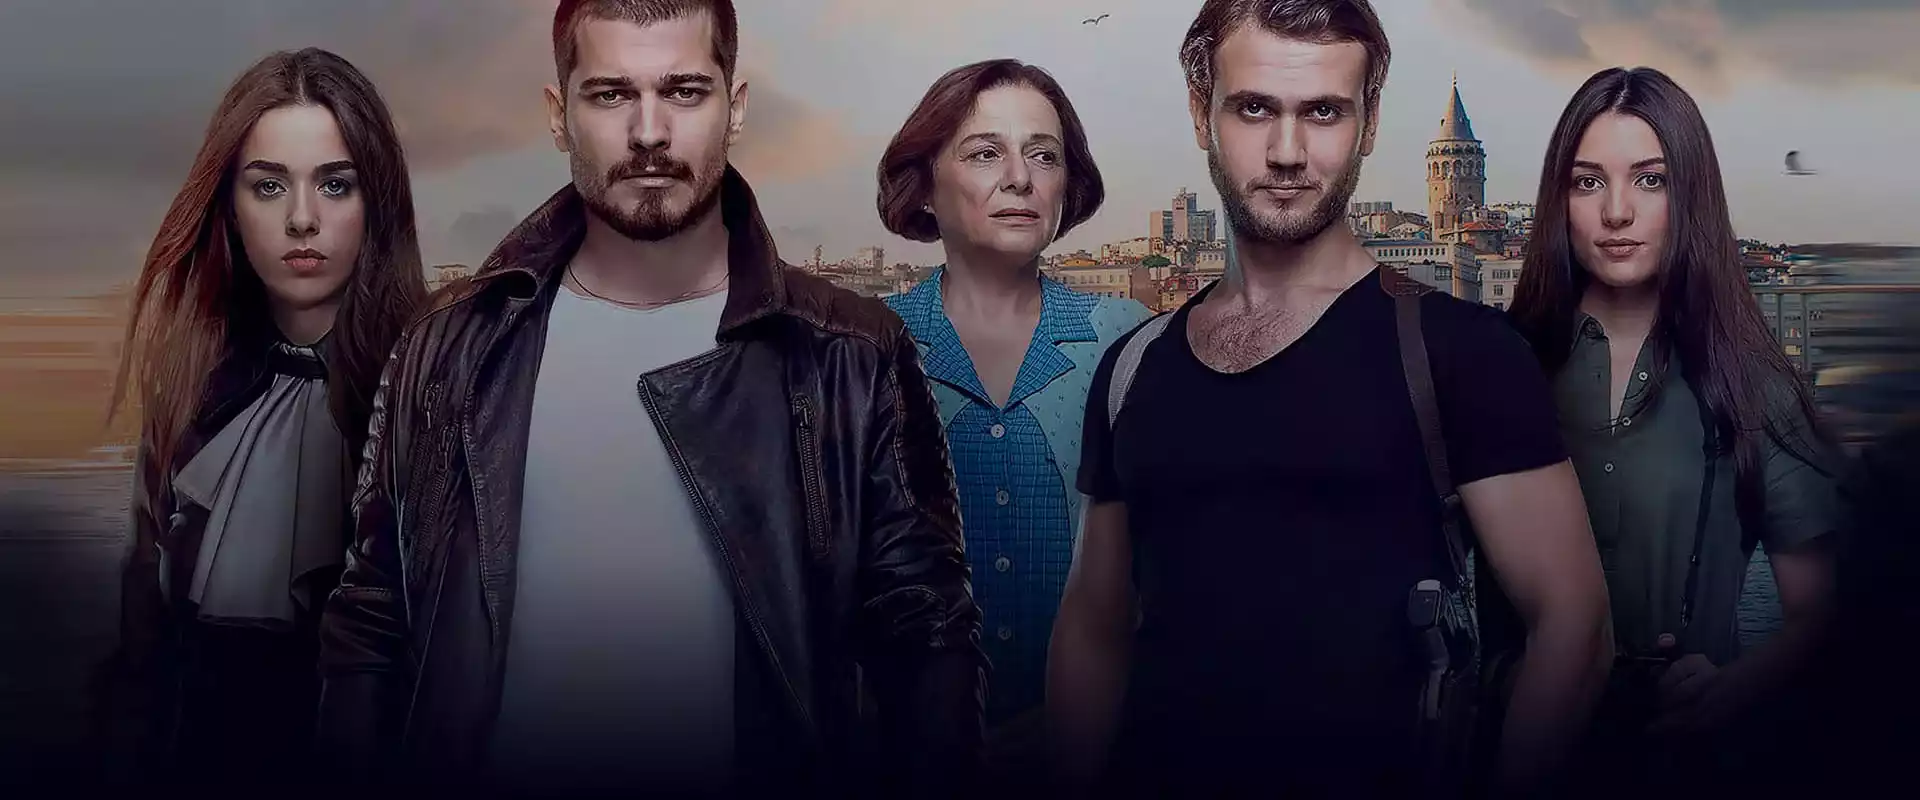 Турецкие сериалы 2023 года онлайн на русском языке смотреть в хорошем качестве HD 720 бесплатно - ТуркСезон.ТВ